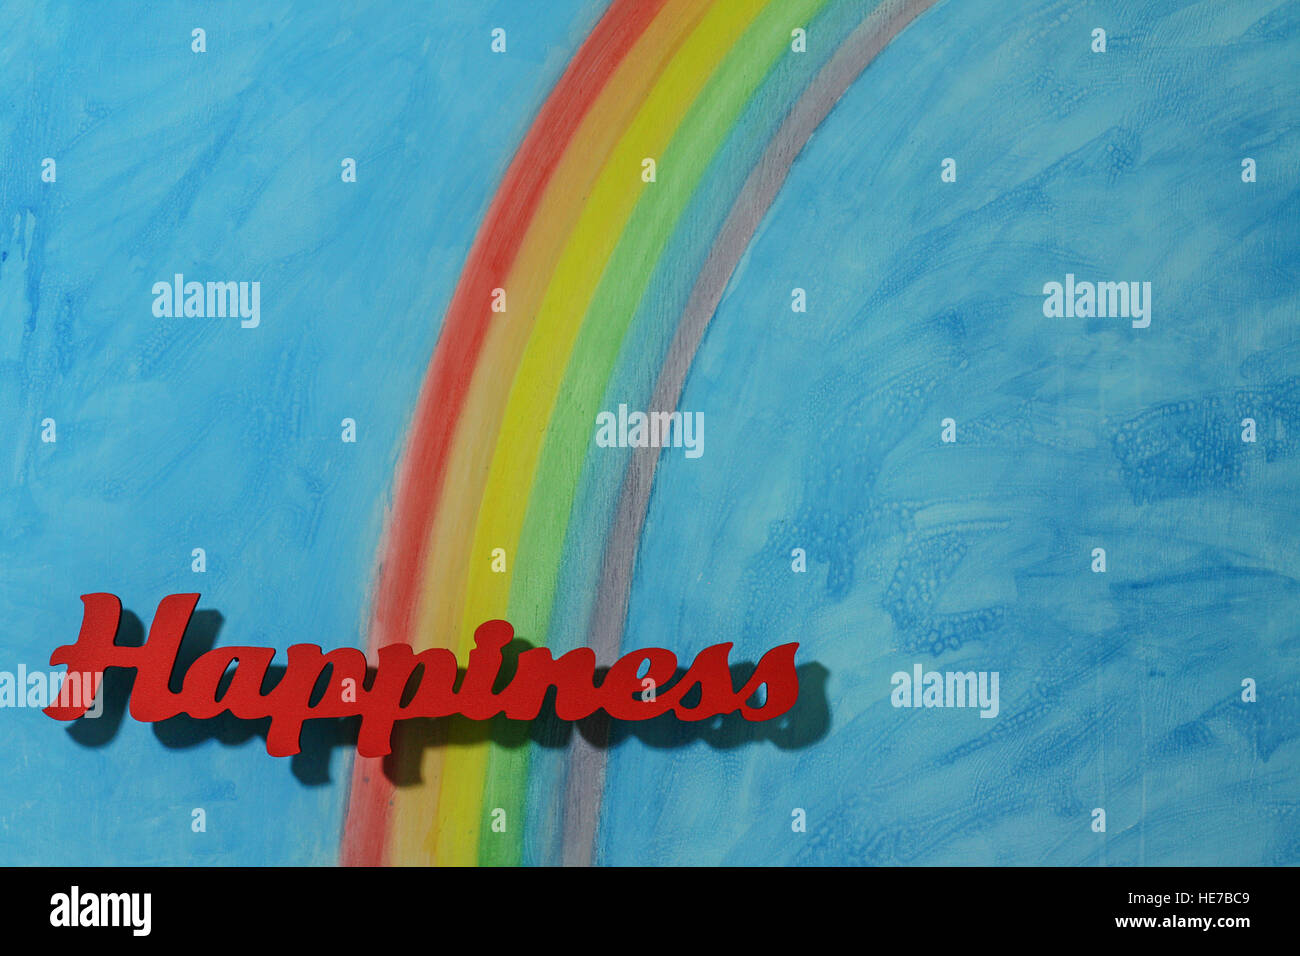 L'orthographe des lettres rouges le mot bonheur pour illustrer le concept de joie, heureux, l'amour et de bien-être ; le format paysage. Banque D'Images